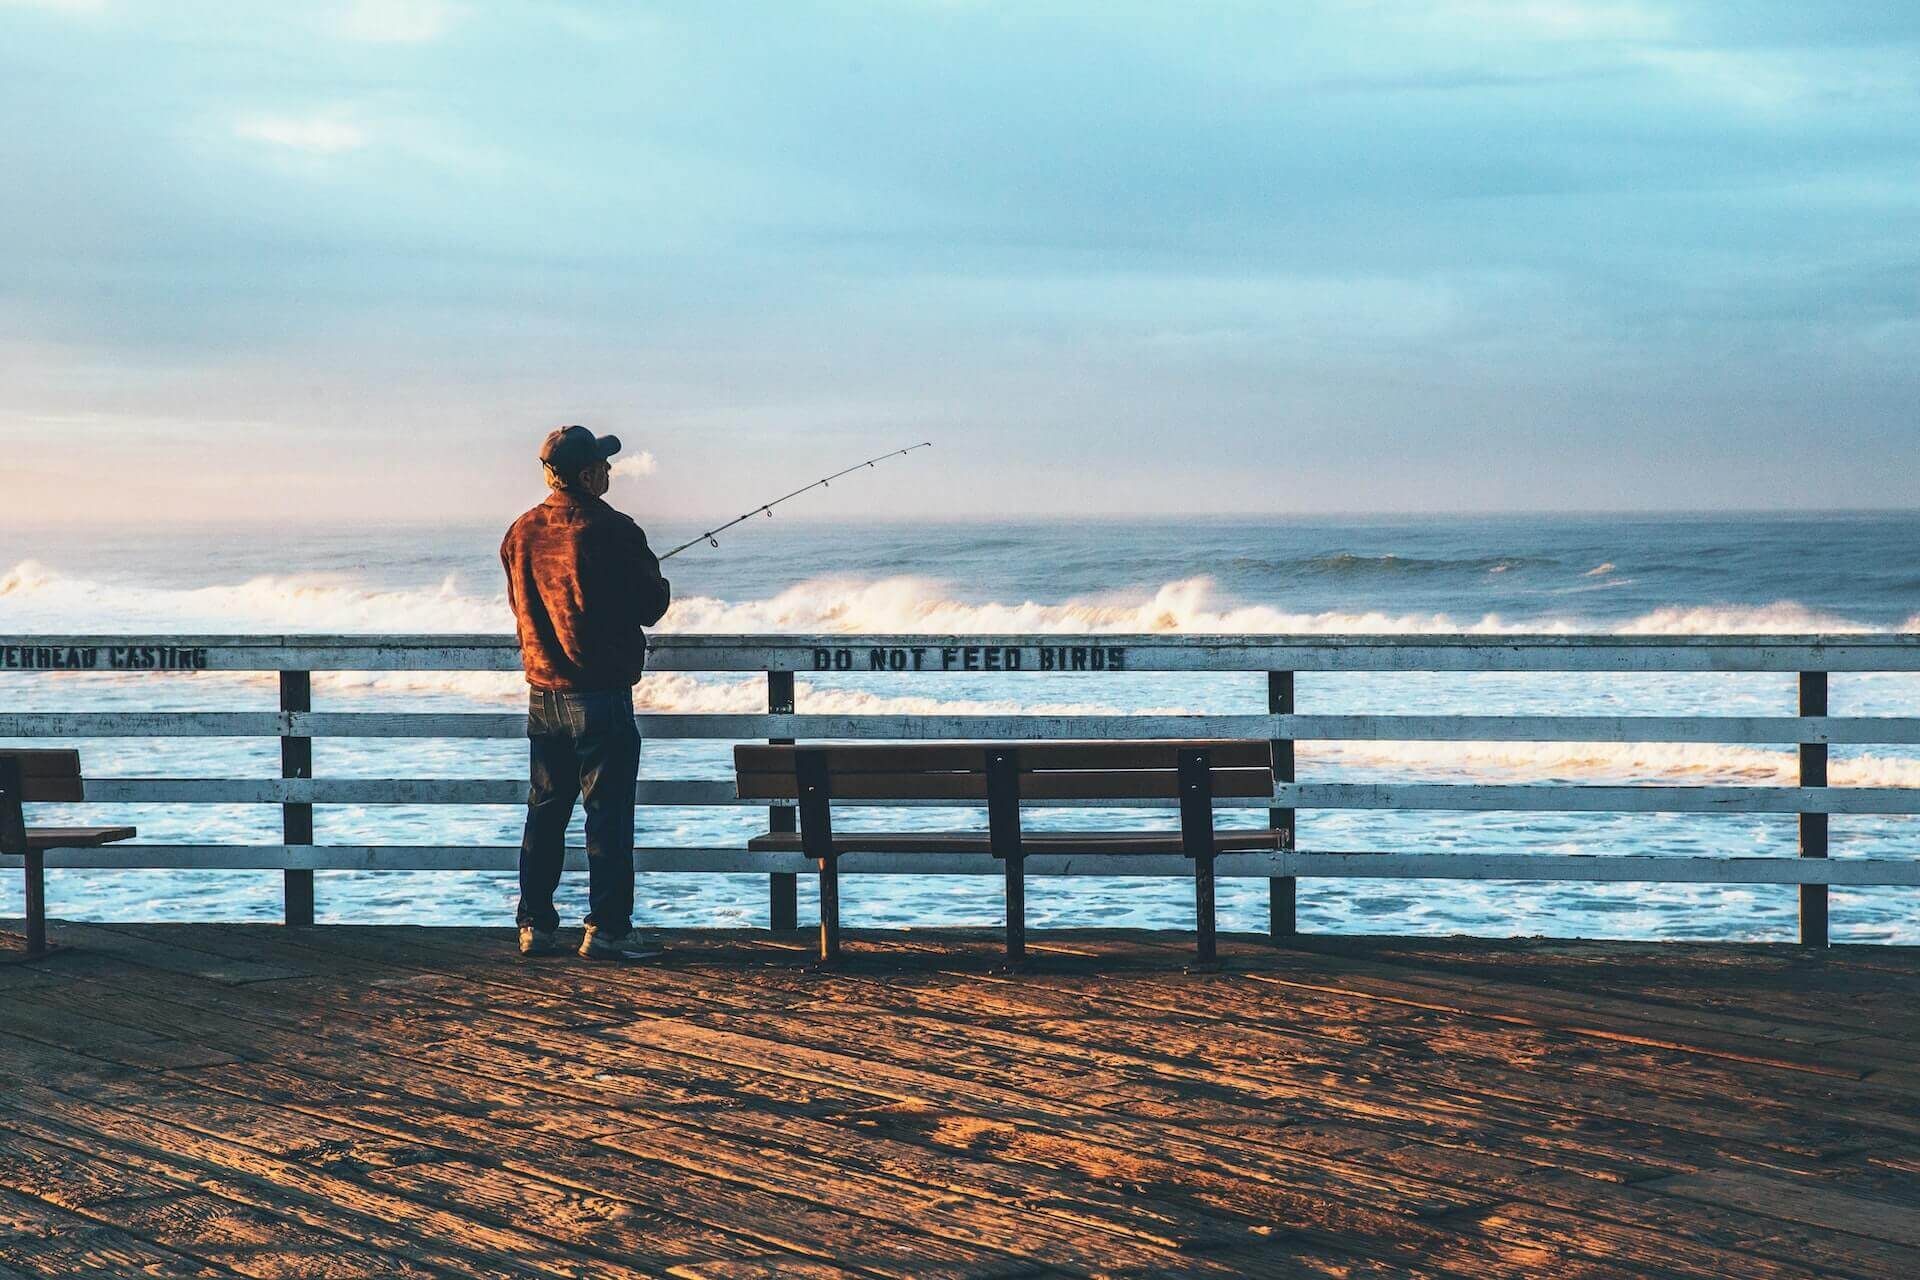 Man at a pier fishing